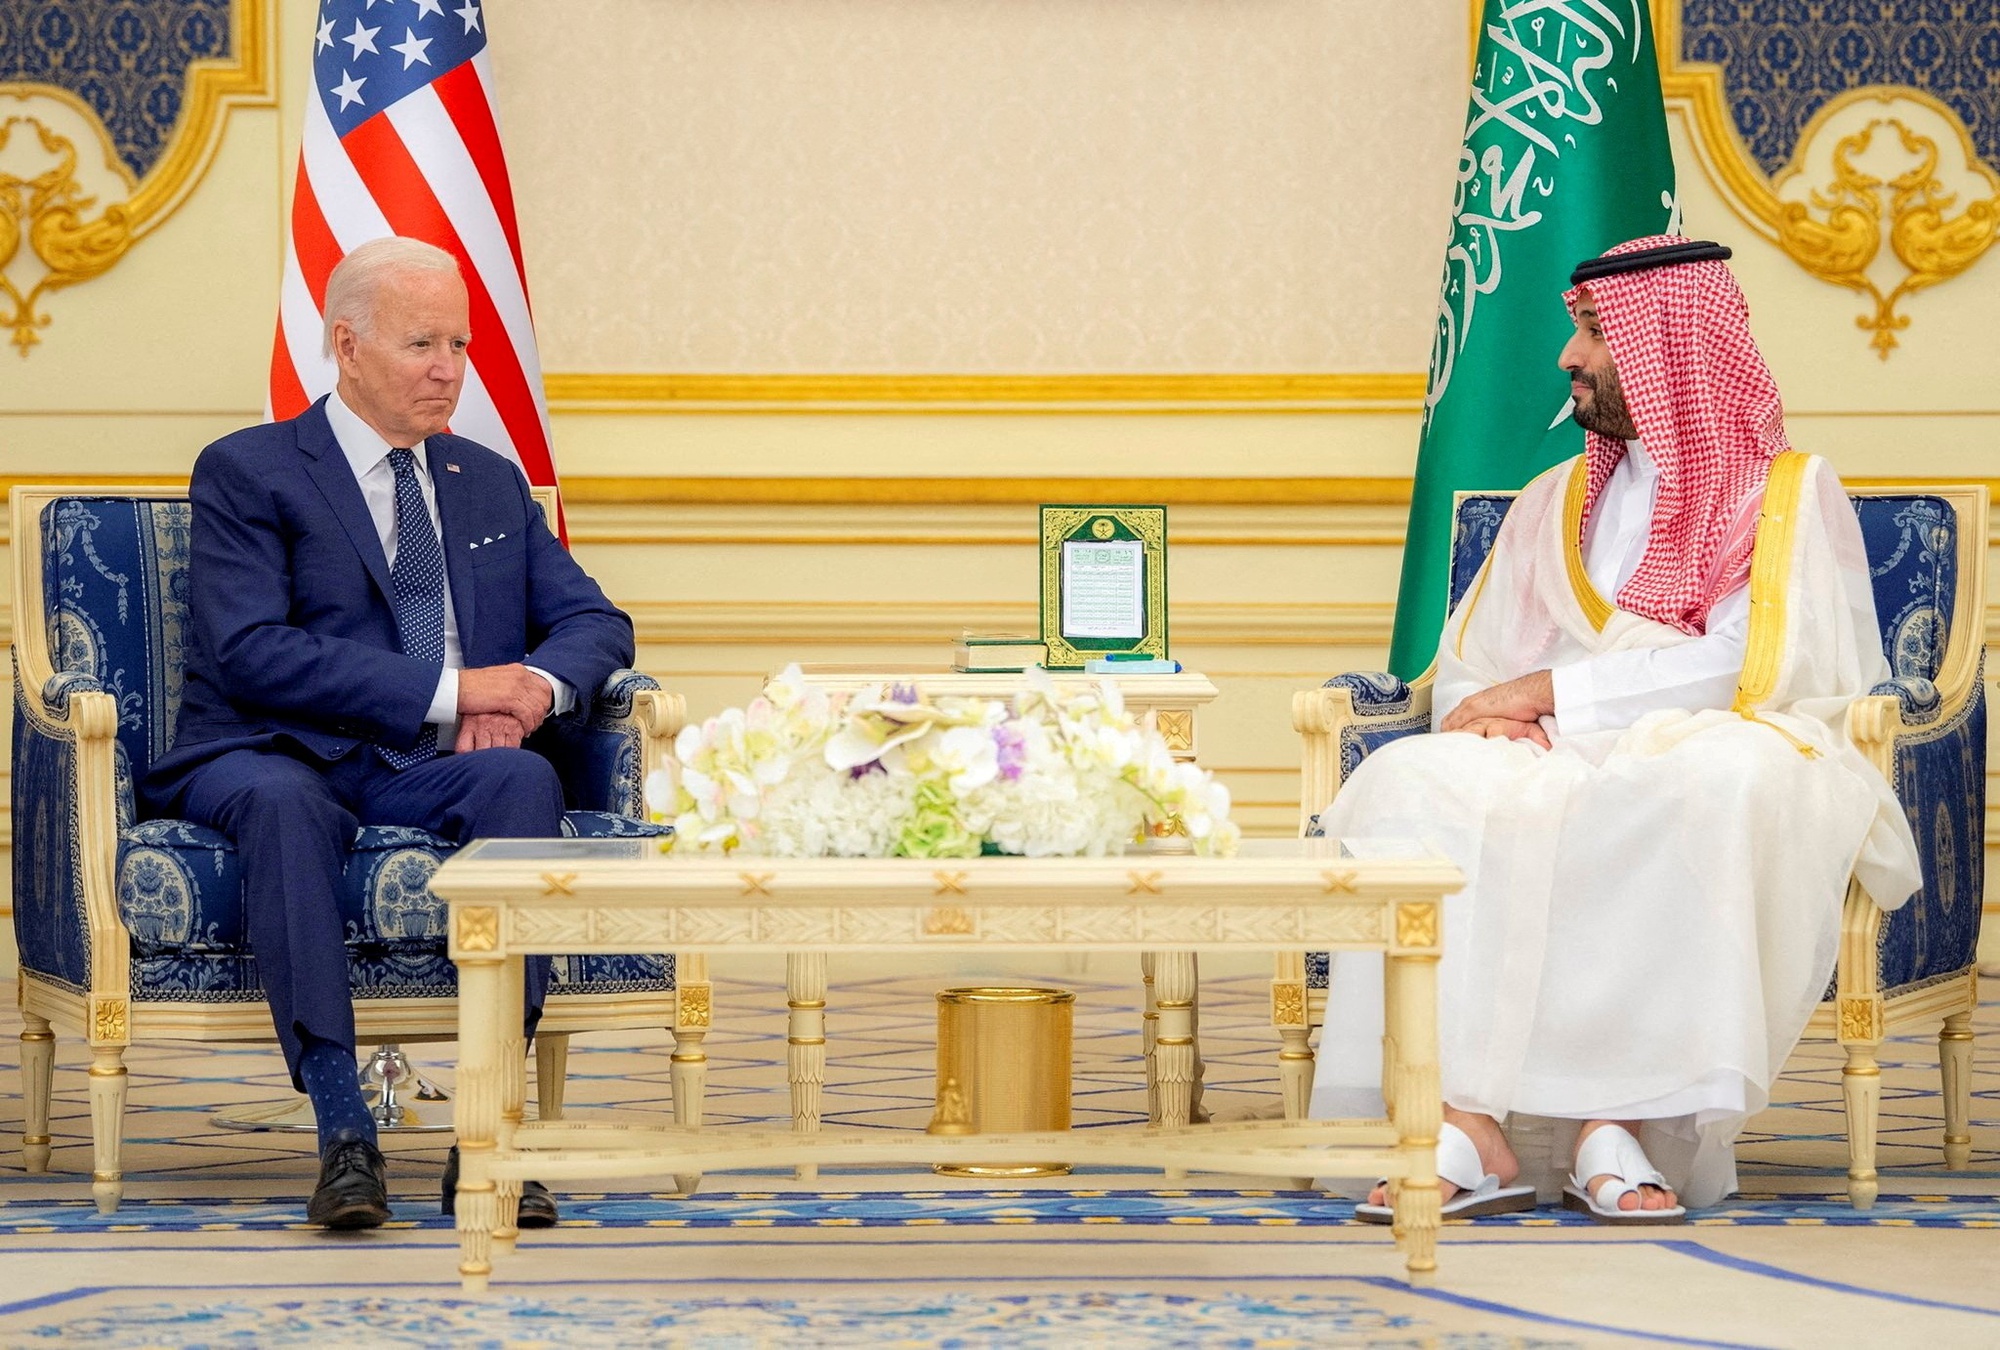 Tranh cãi xung quanh thỏa thuận bí mật giữa Mỹ và Saudi Arabia - Ảnh 1.